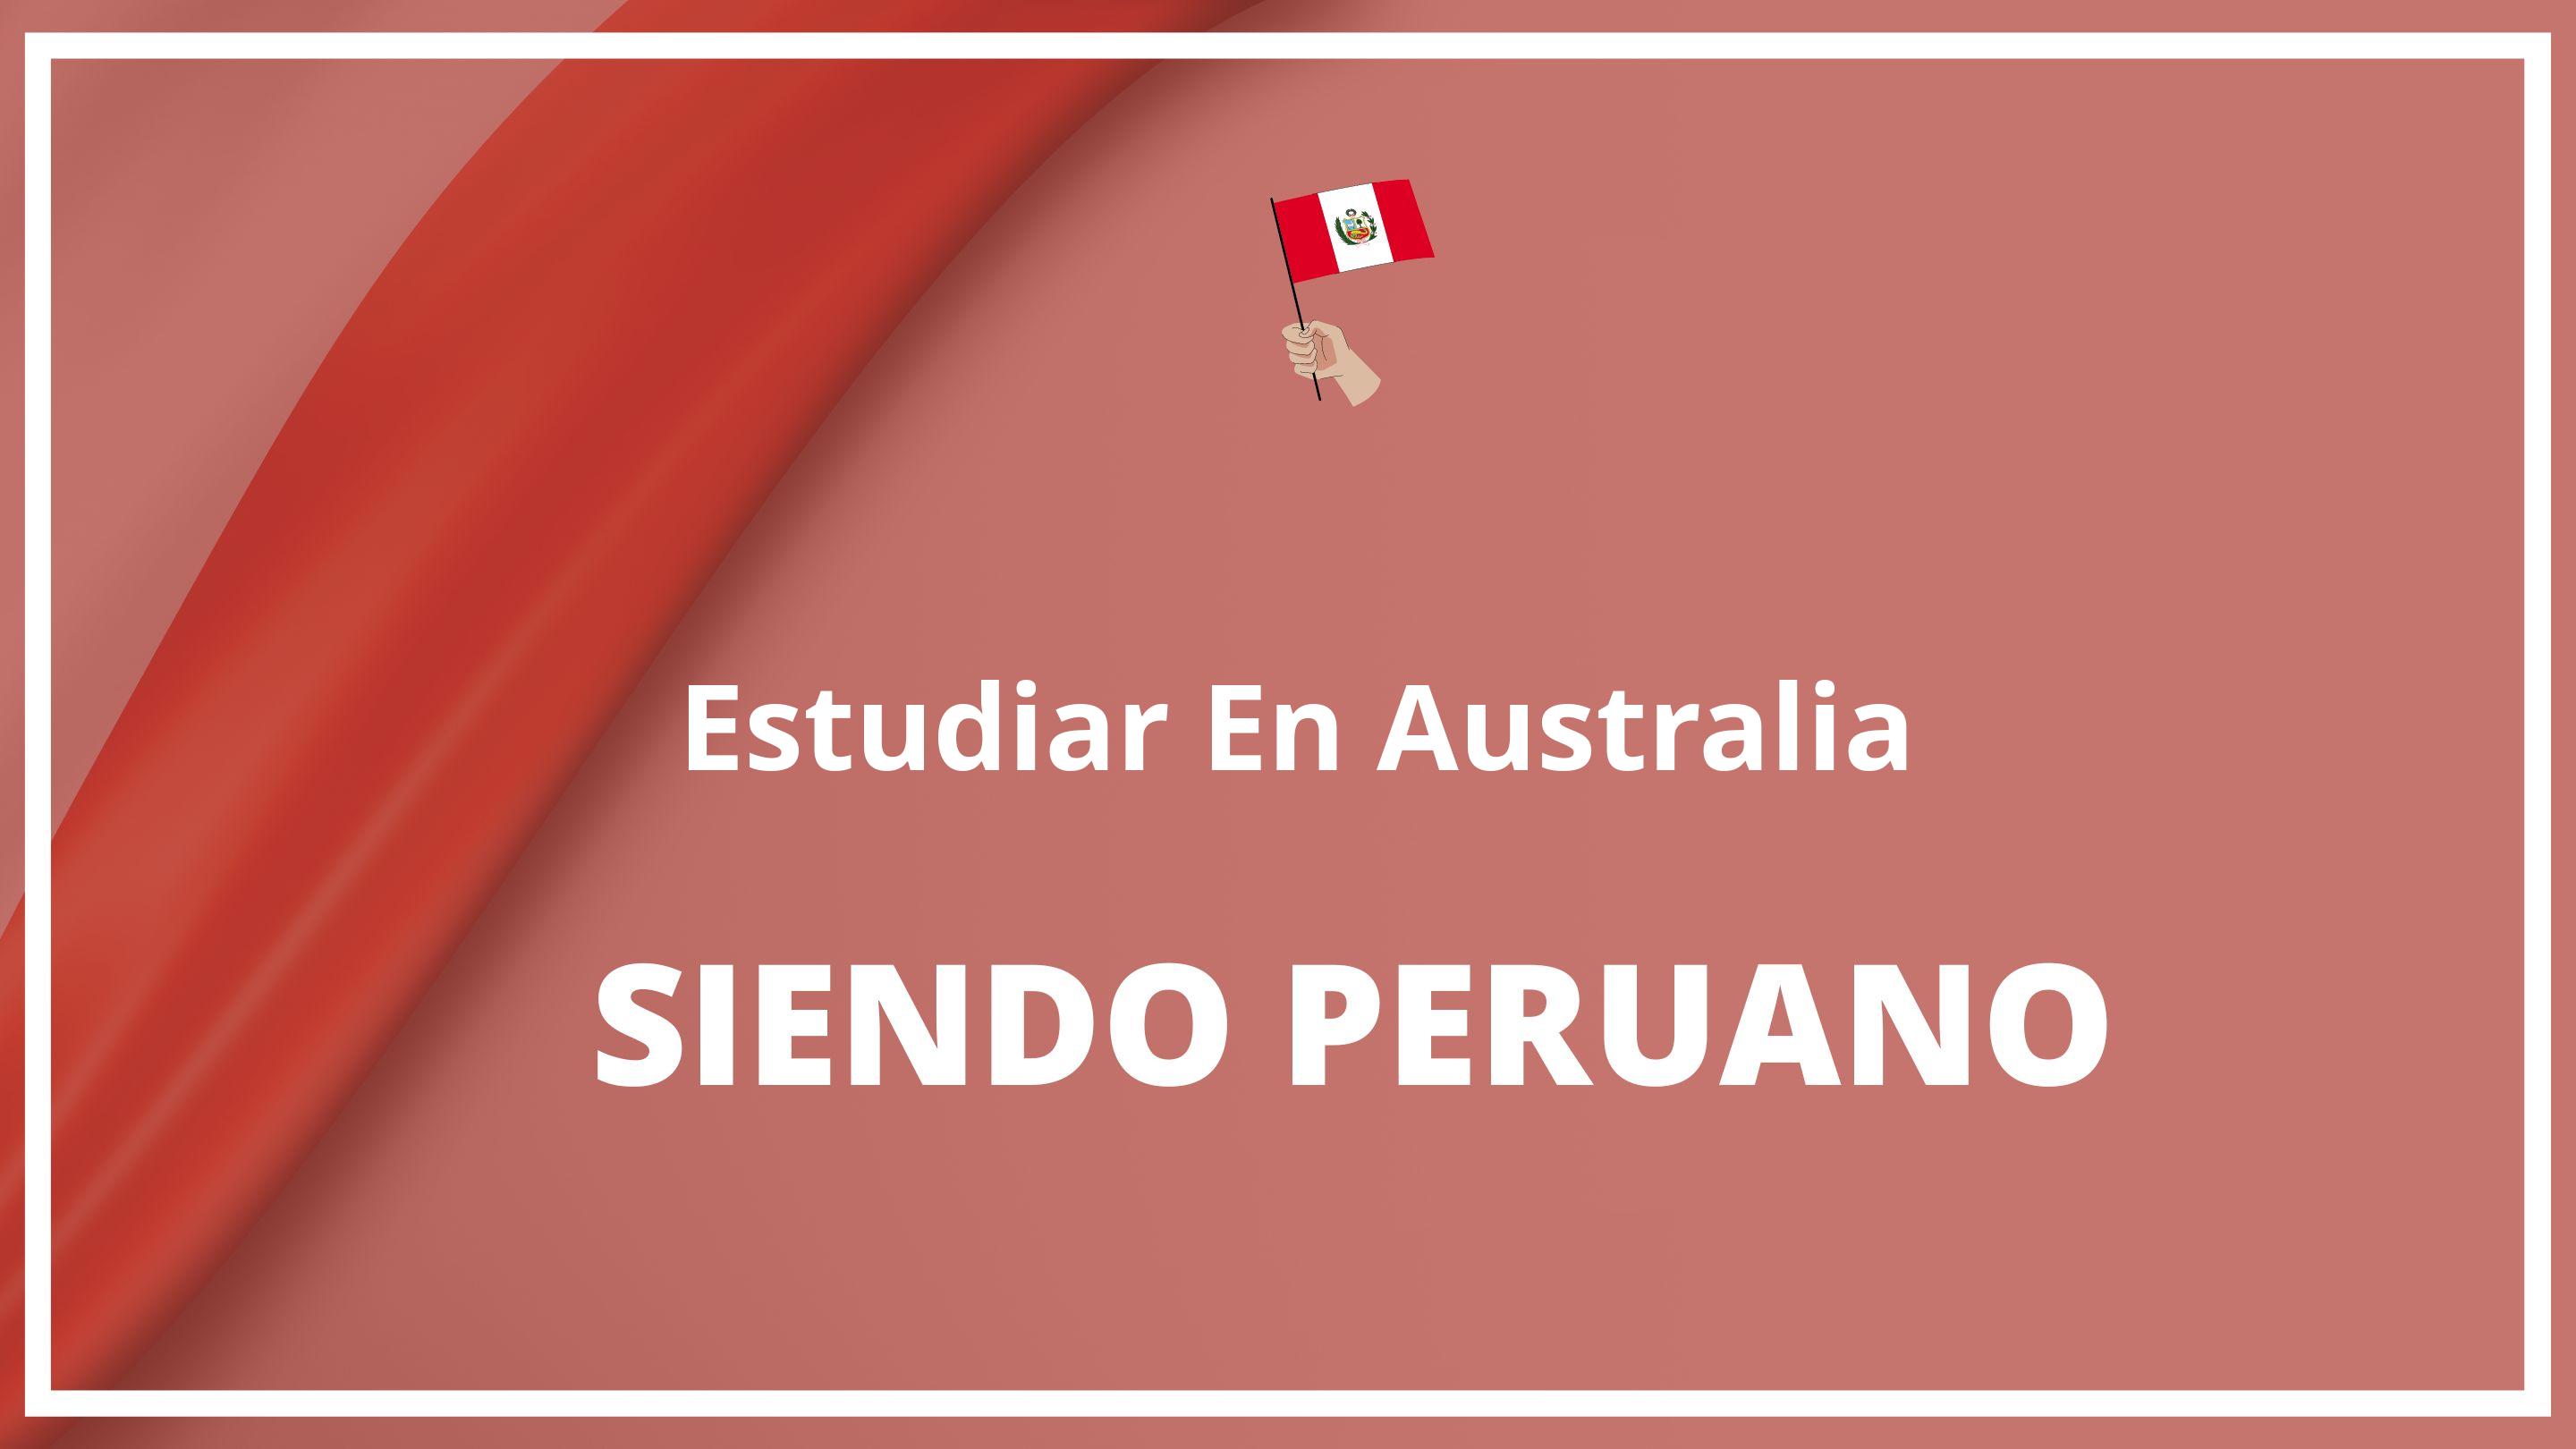 Como estudiar en australia siendo peruano